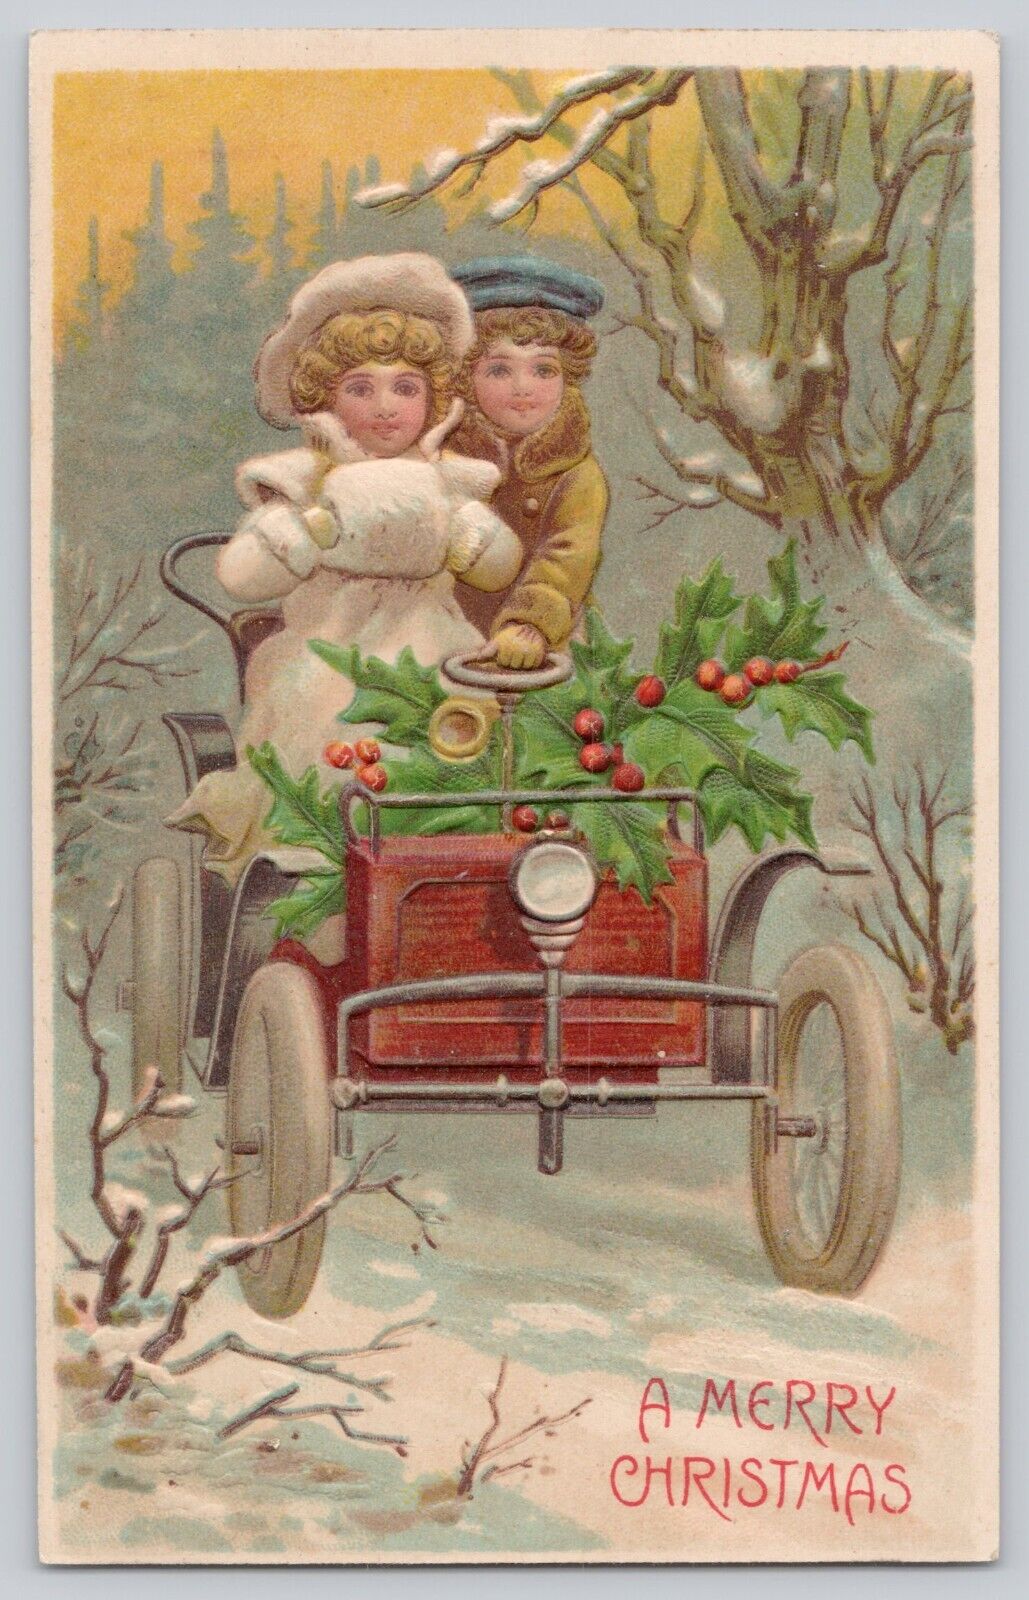 Postcard Christmas Greetings Embossed Couple in Vintage car